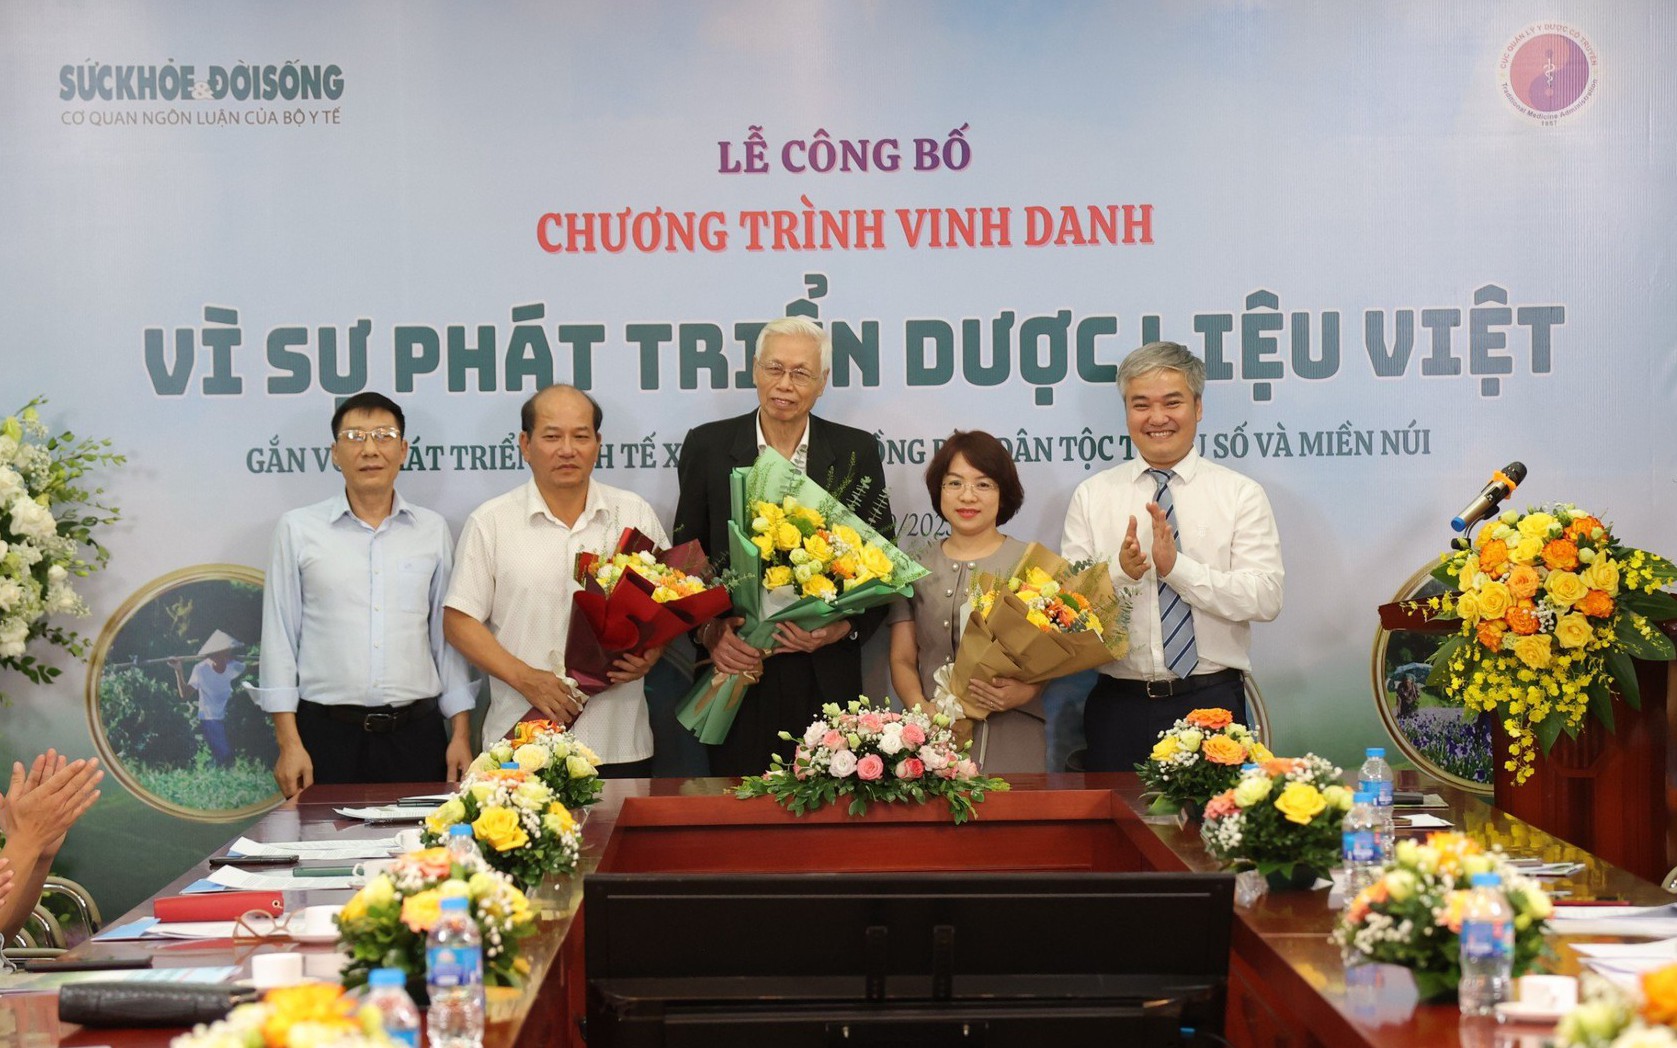 Công bố Chương trình "Vinh danh vì sự phát triển dược liệu Việt gắn với phát triển KT-XH ĐBDTTSMN"